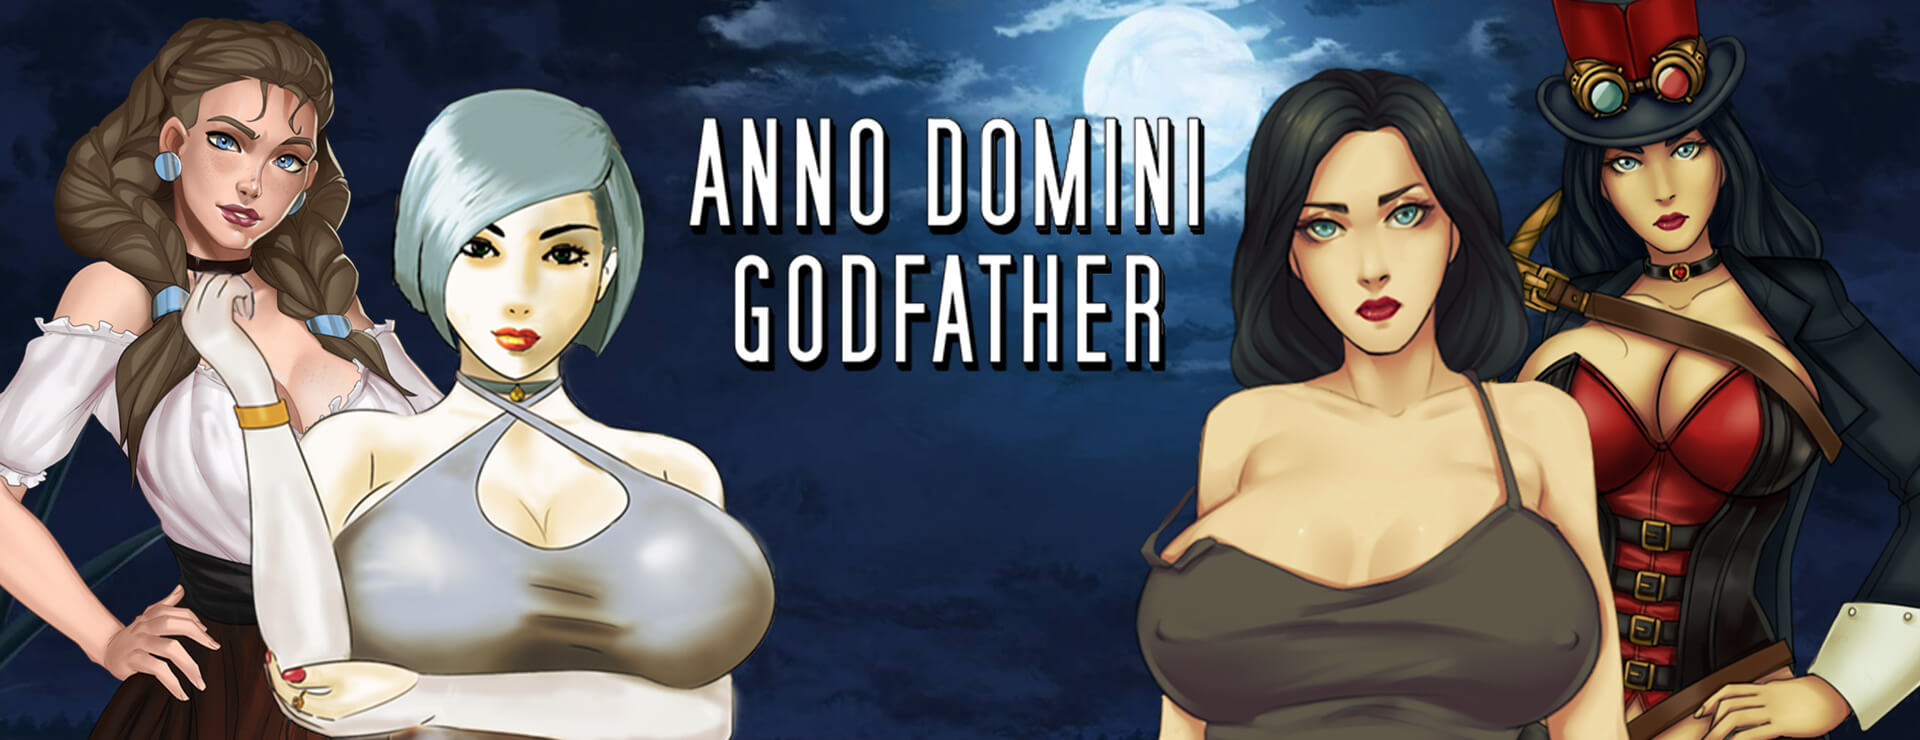 Anno Domini Godfather - RPG Juego